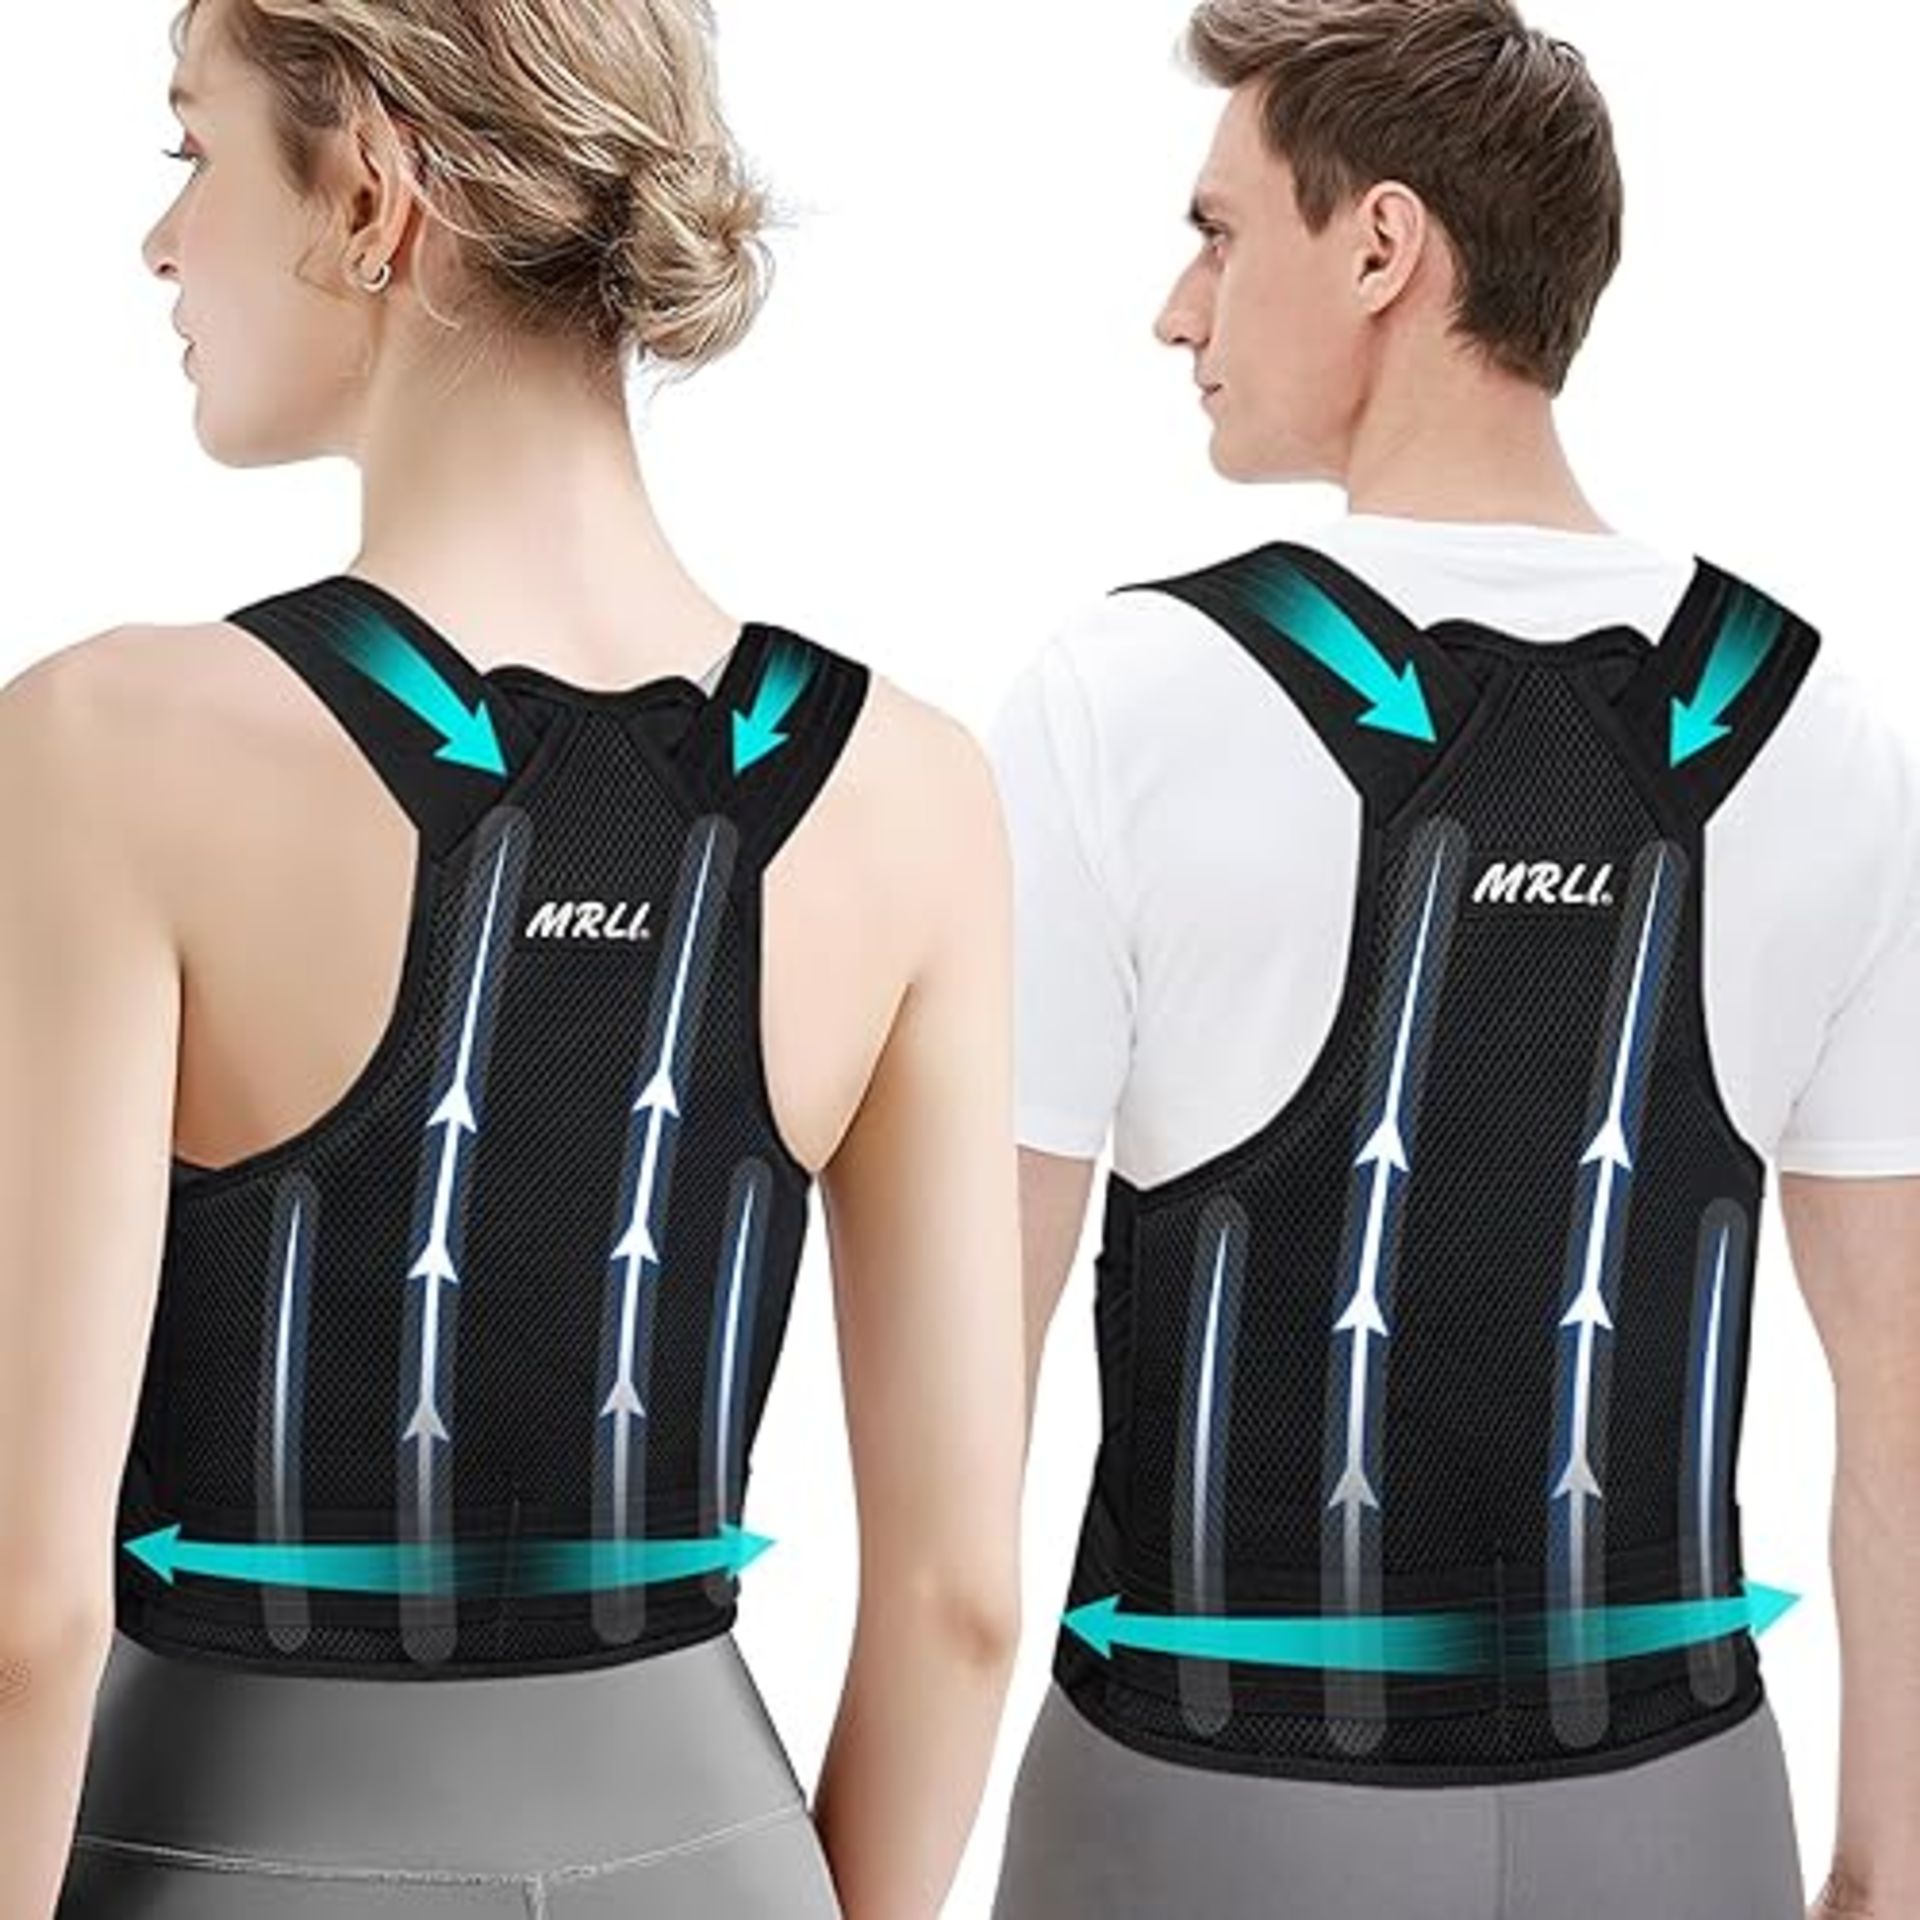 Back Support Brace Posture Corrector: Adjustable Shoulder Lumbar Belt For Women and Men - Upper Bac